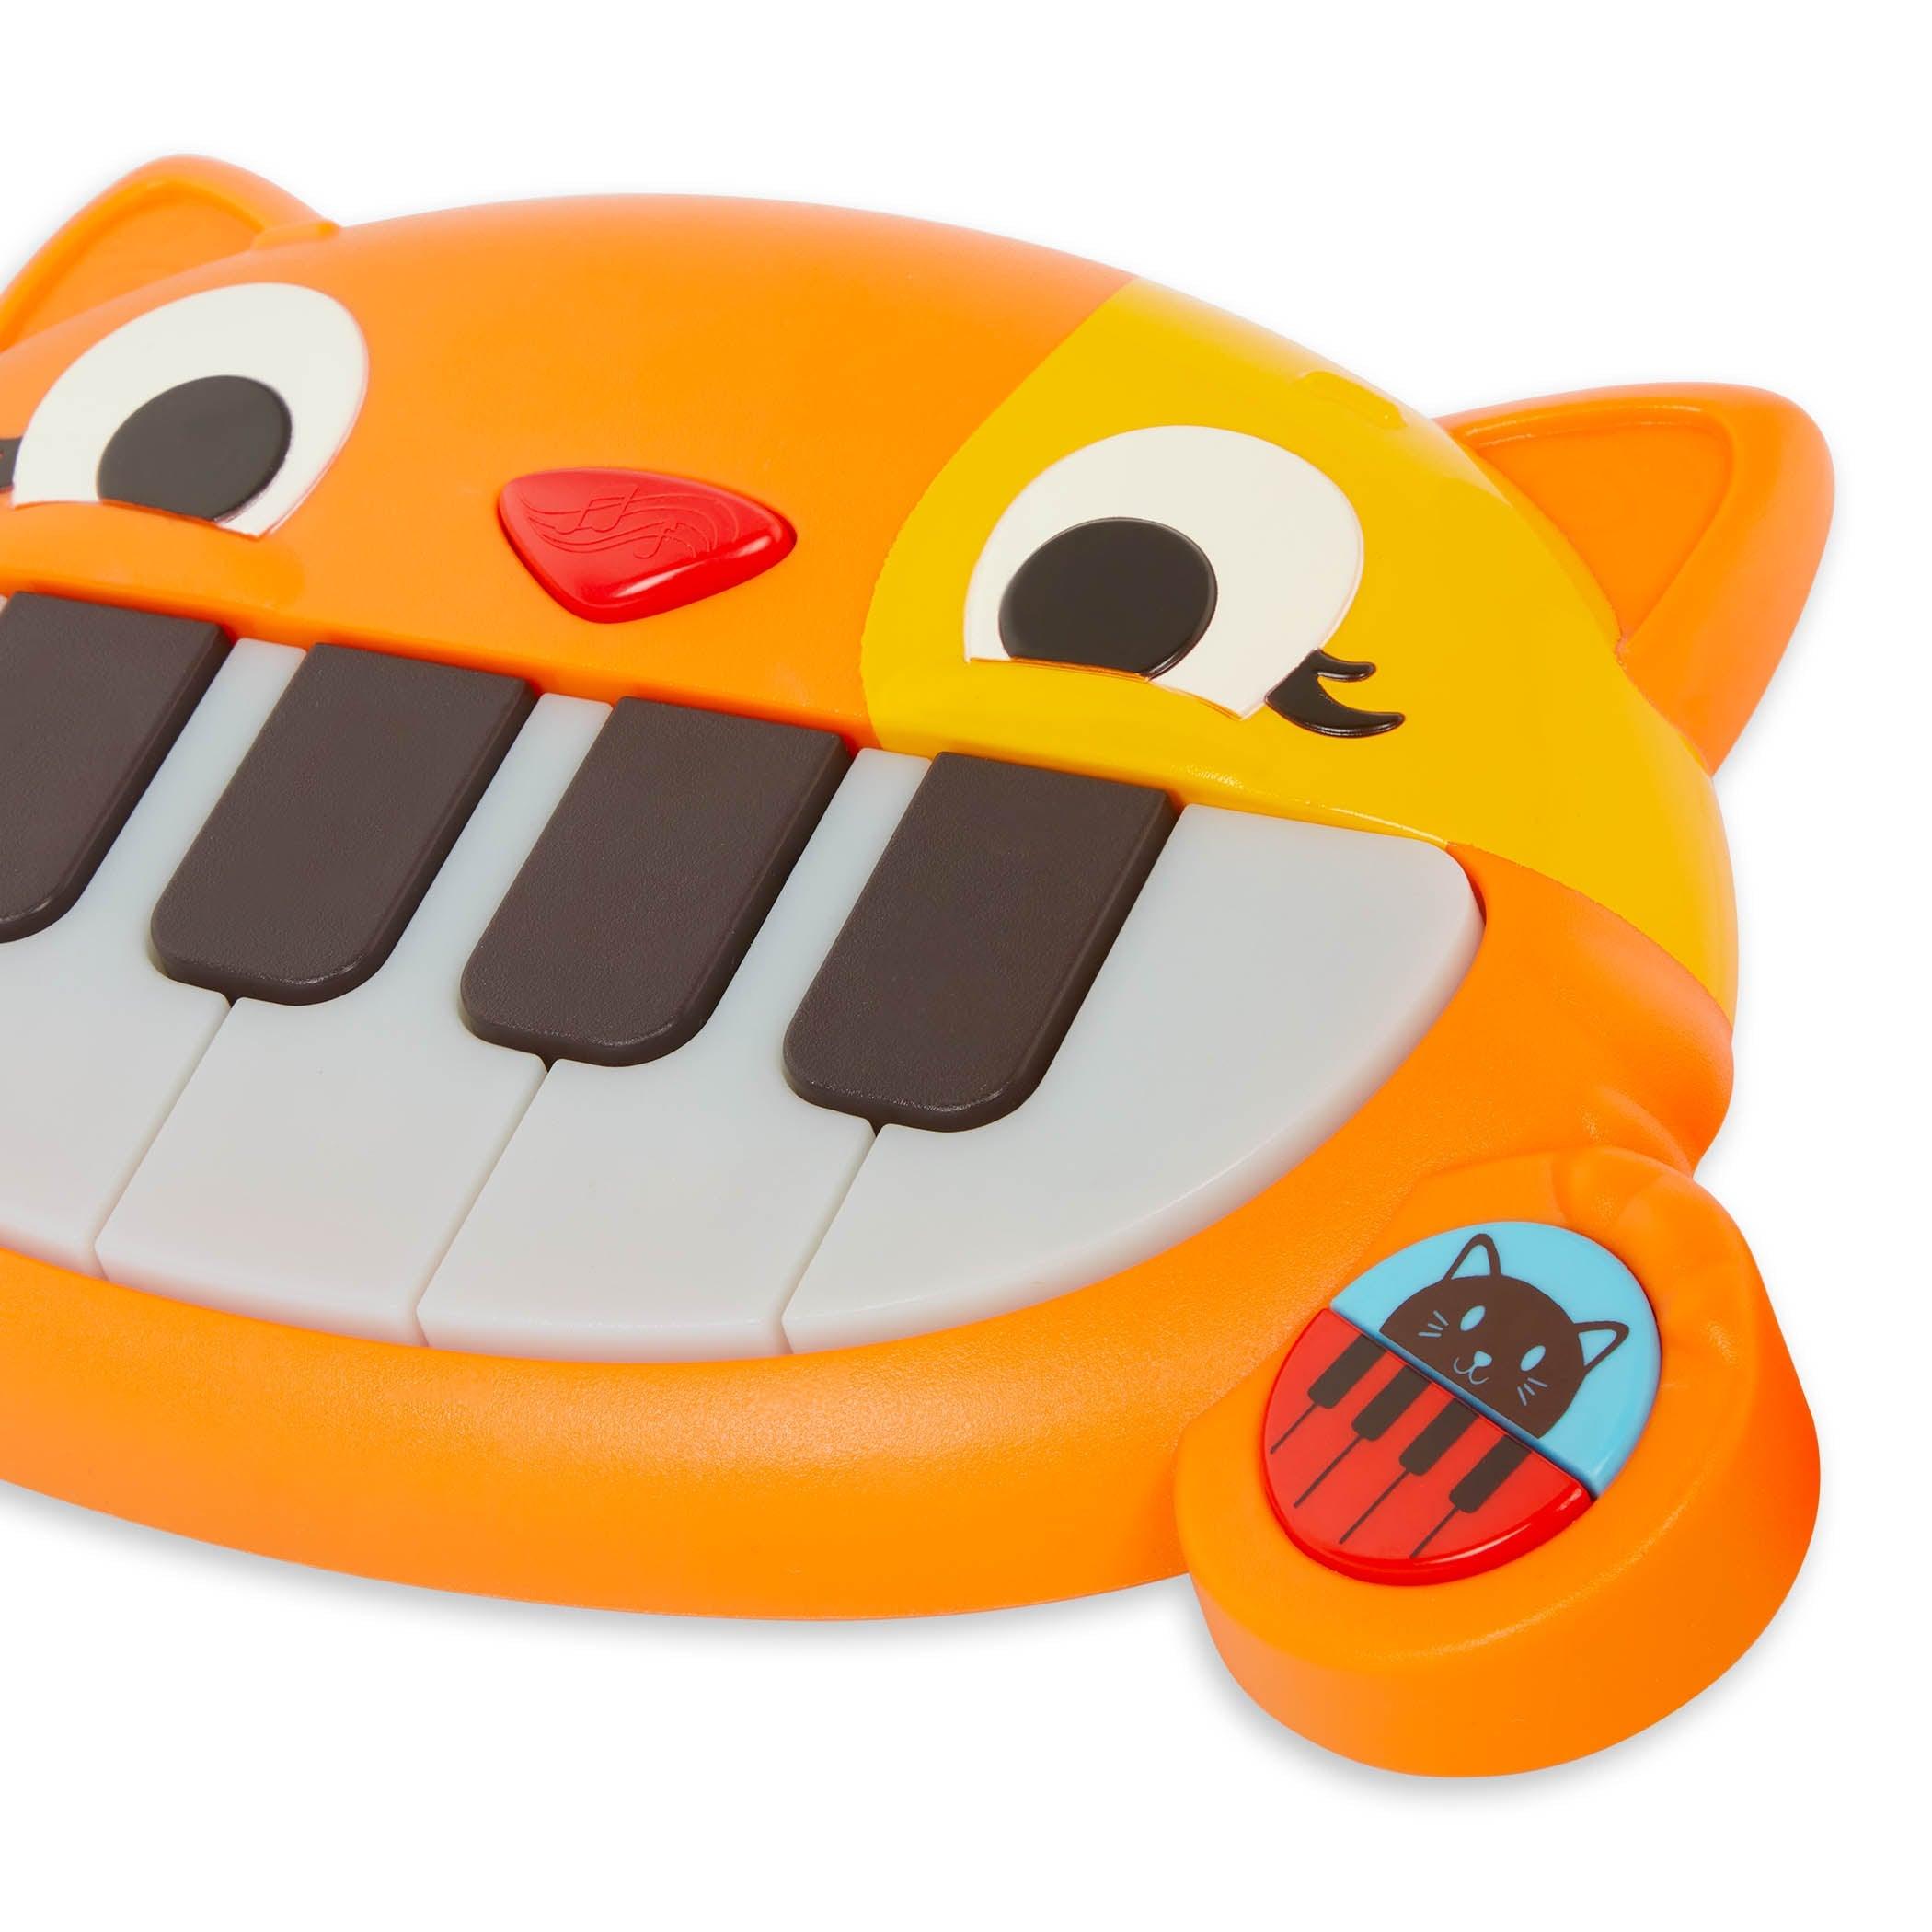 B.Toys: Mini piano de Kitty da criança meiawsic